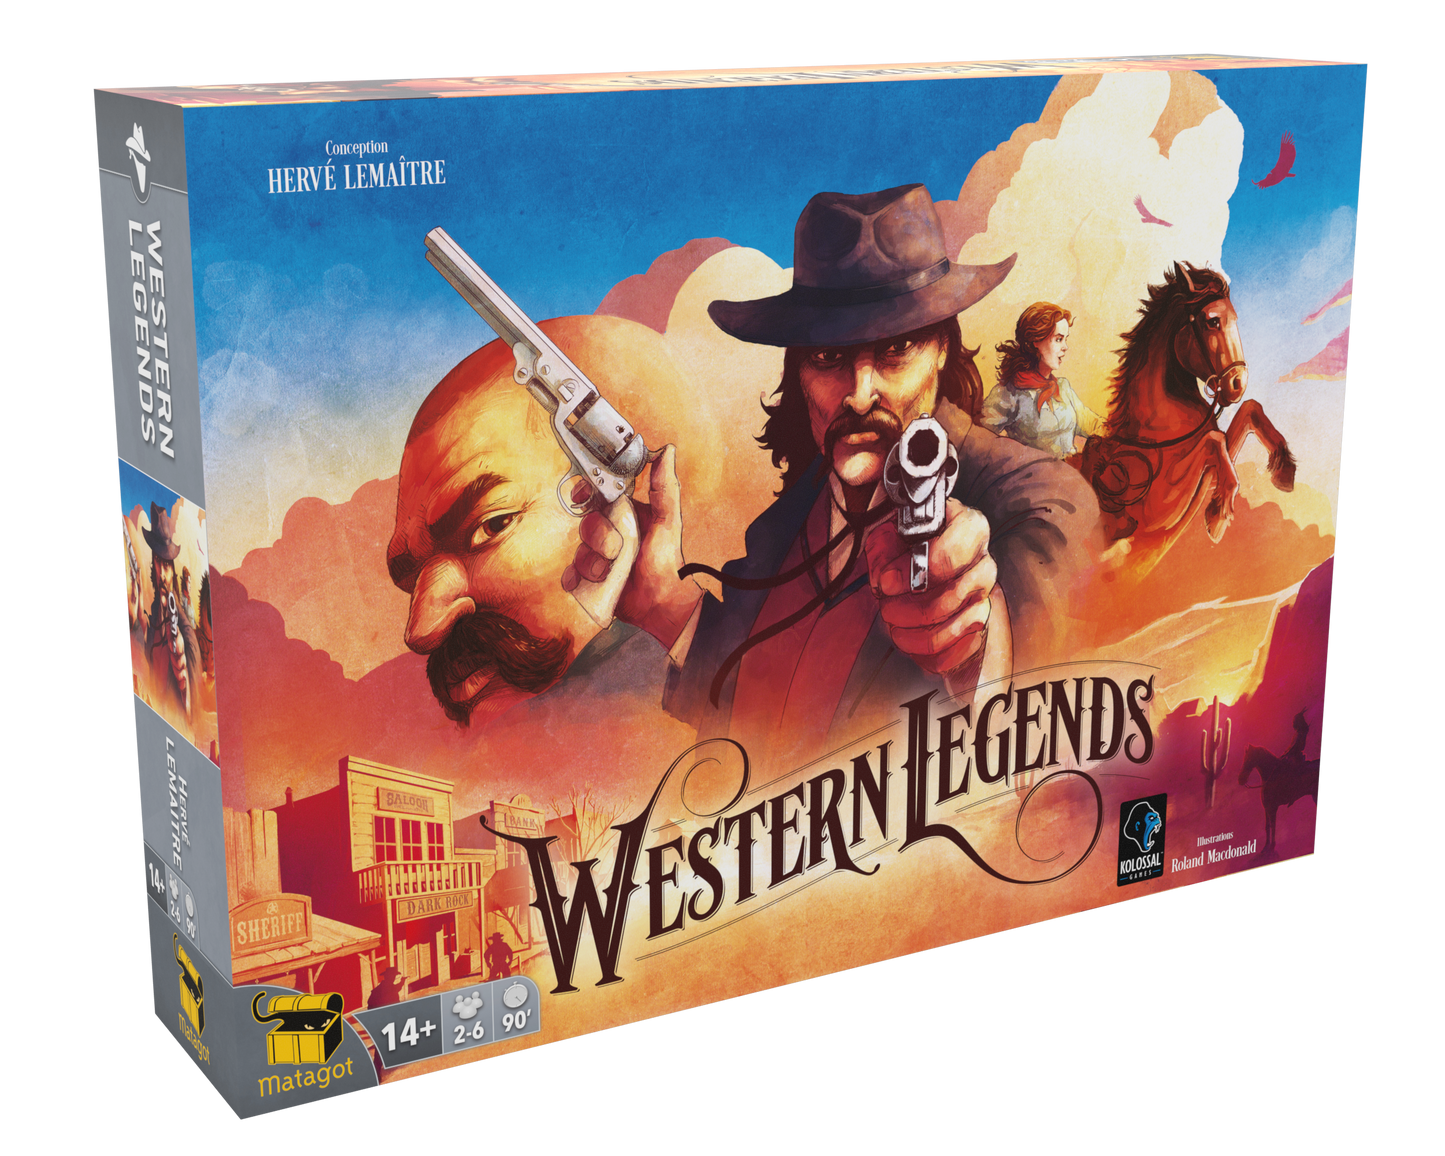 Western legends - Version française